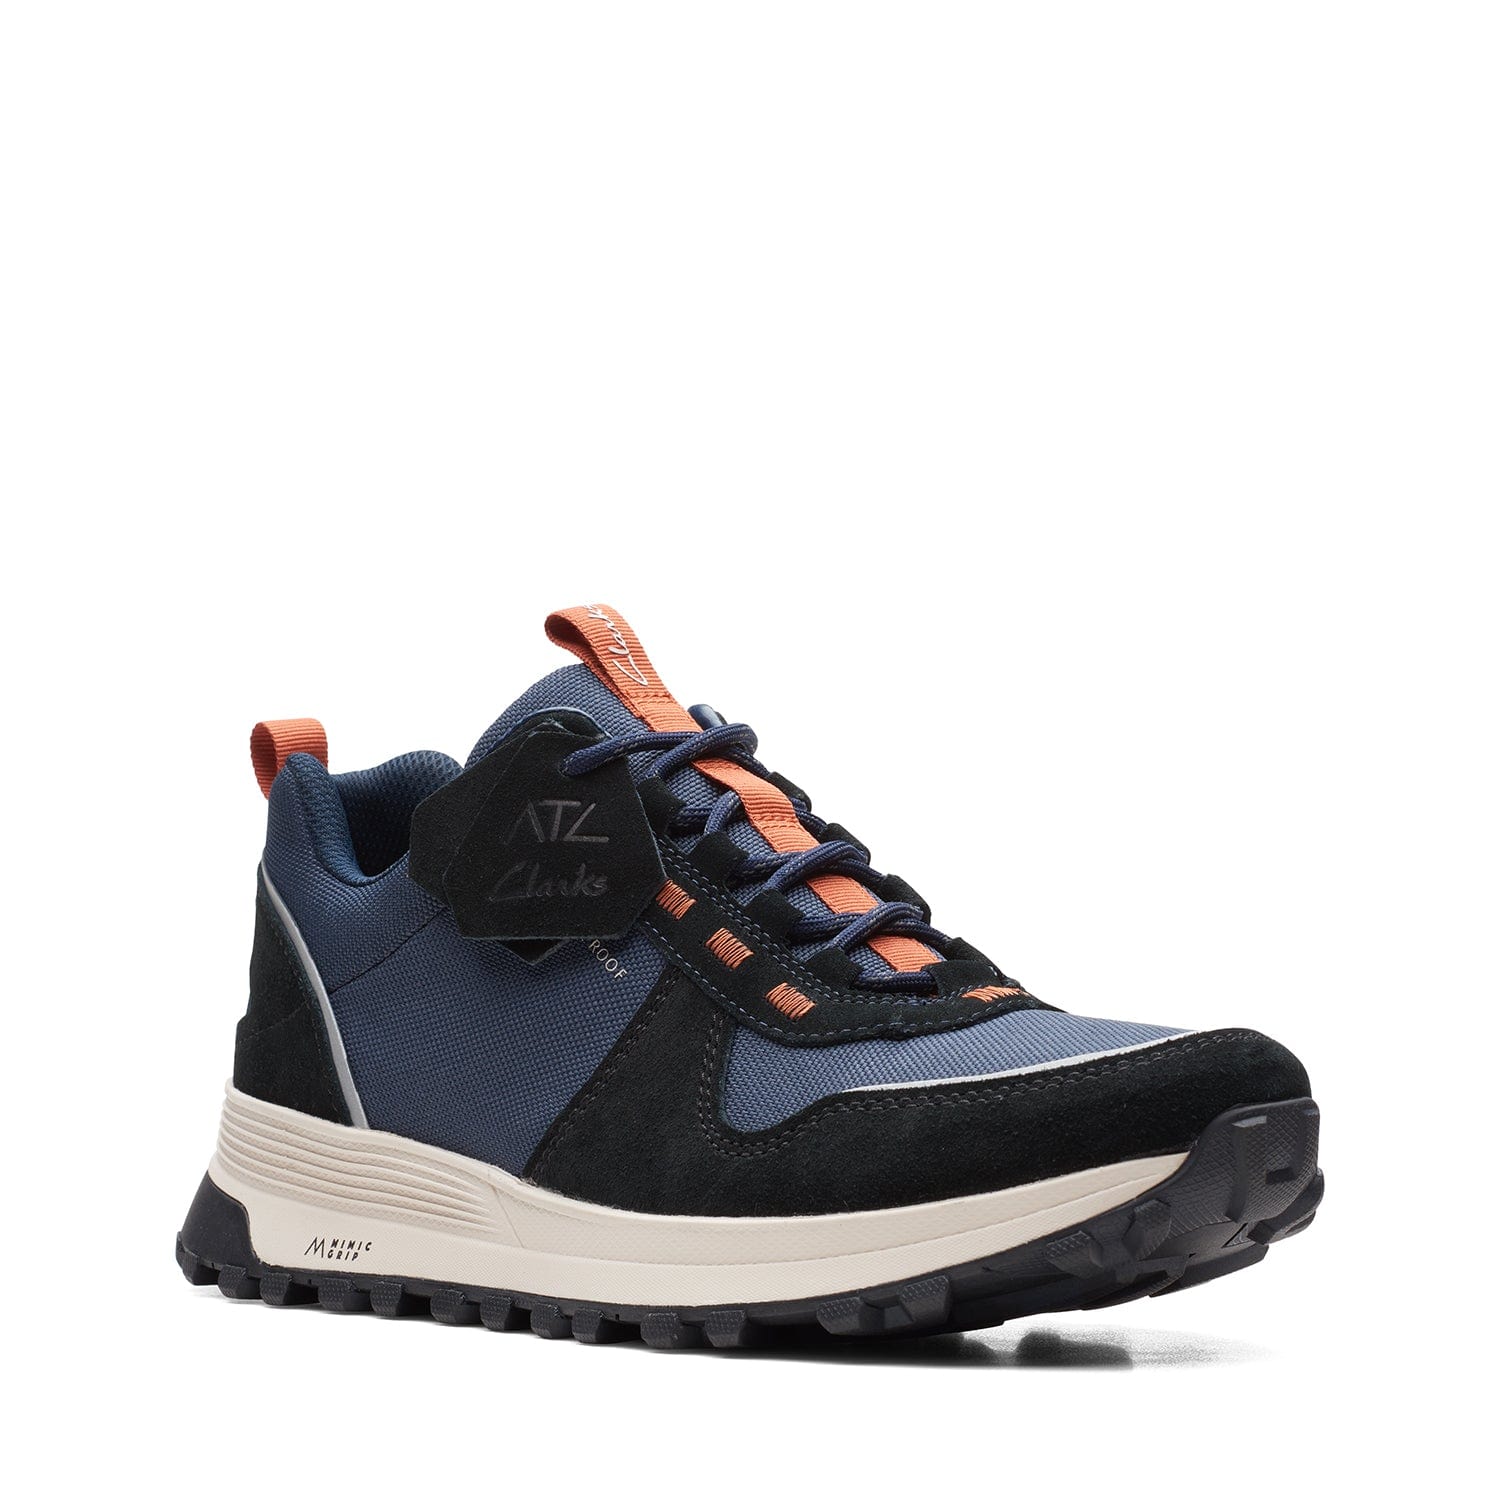 Clarks Atl Trek Walk - Shoes - Navy Combi - 261657397 - G Width (Standard Fit)